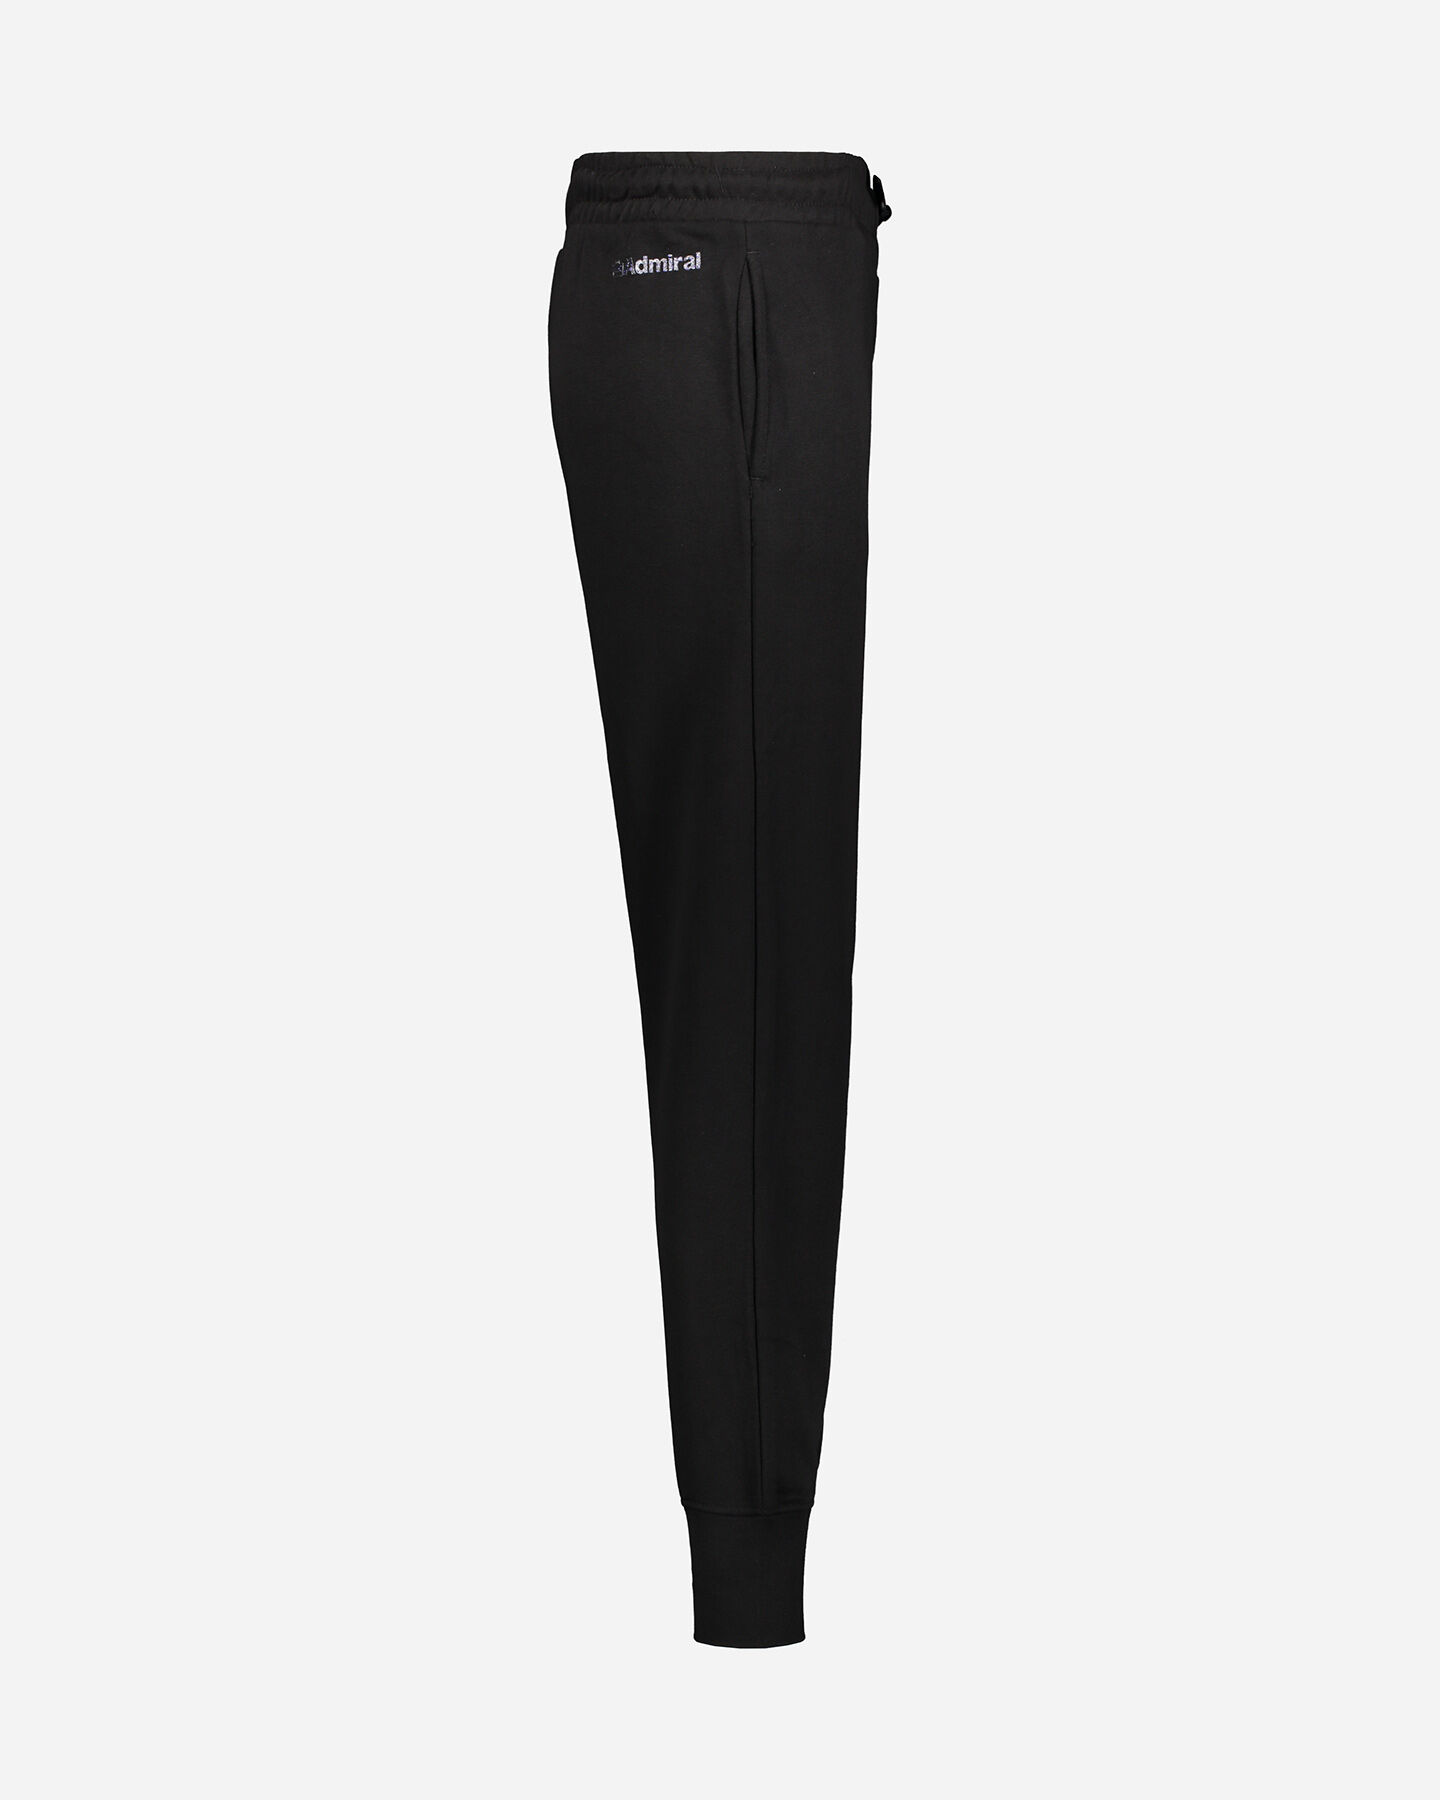  Pantalone ADMIRAL CLASSIC W S4080645|050|S scatto 1